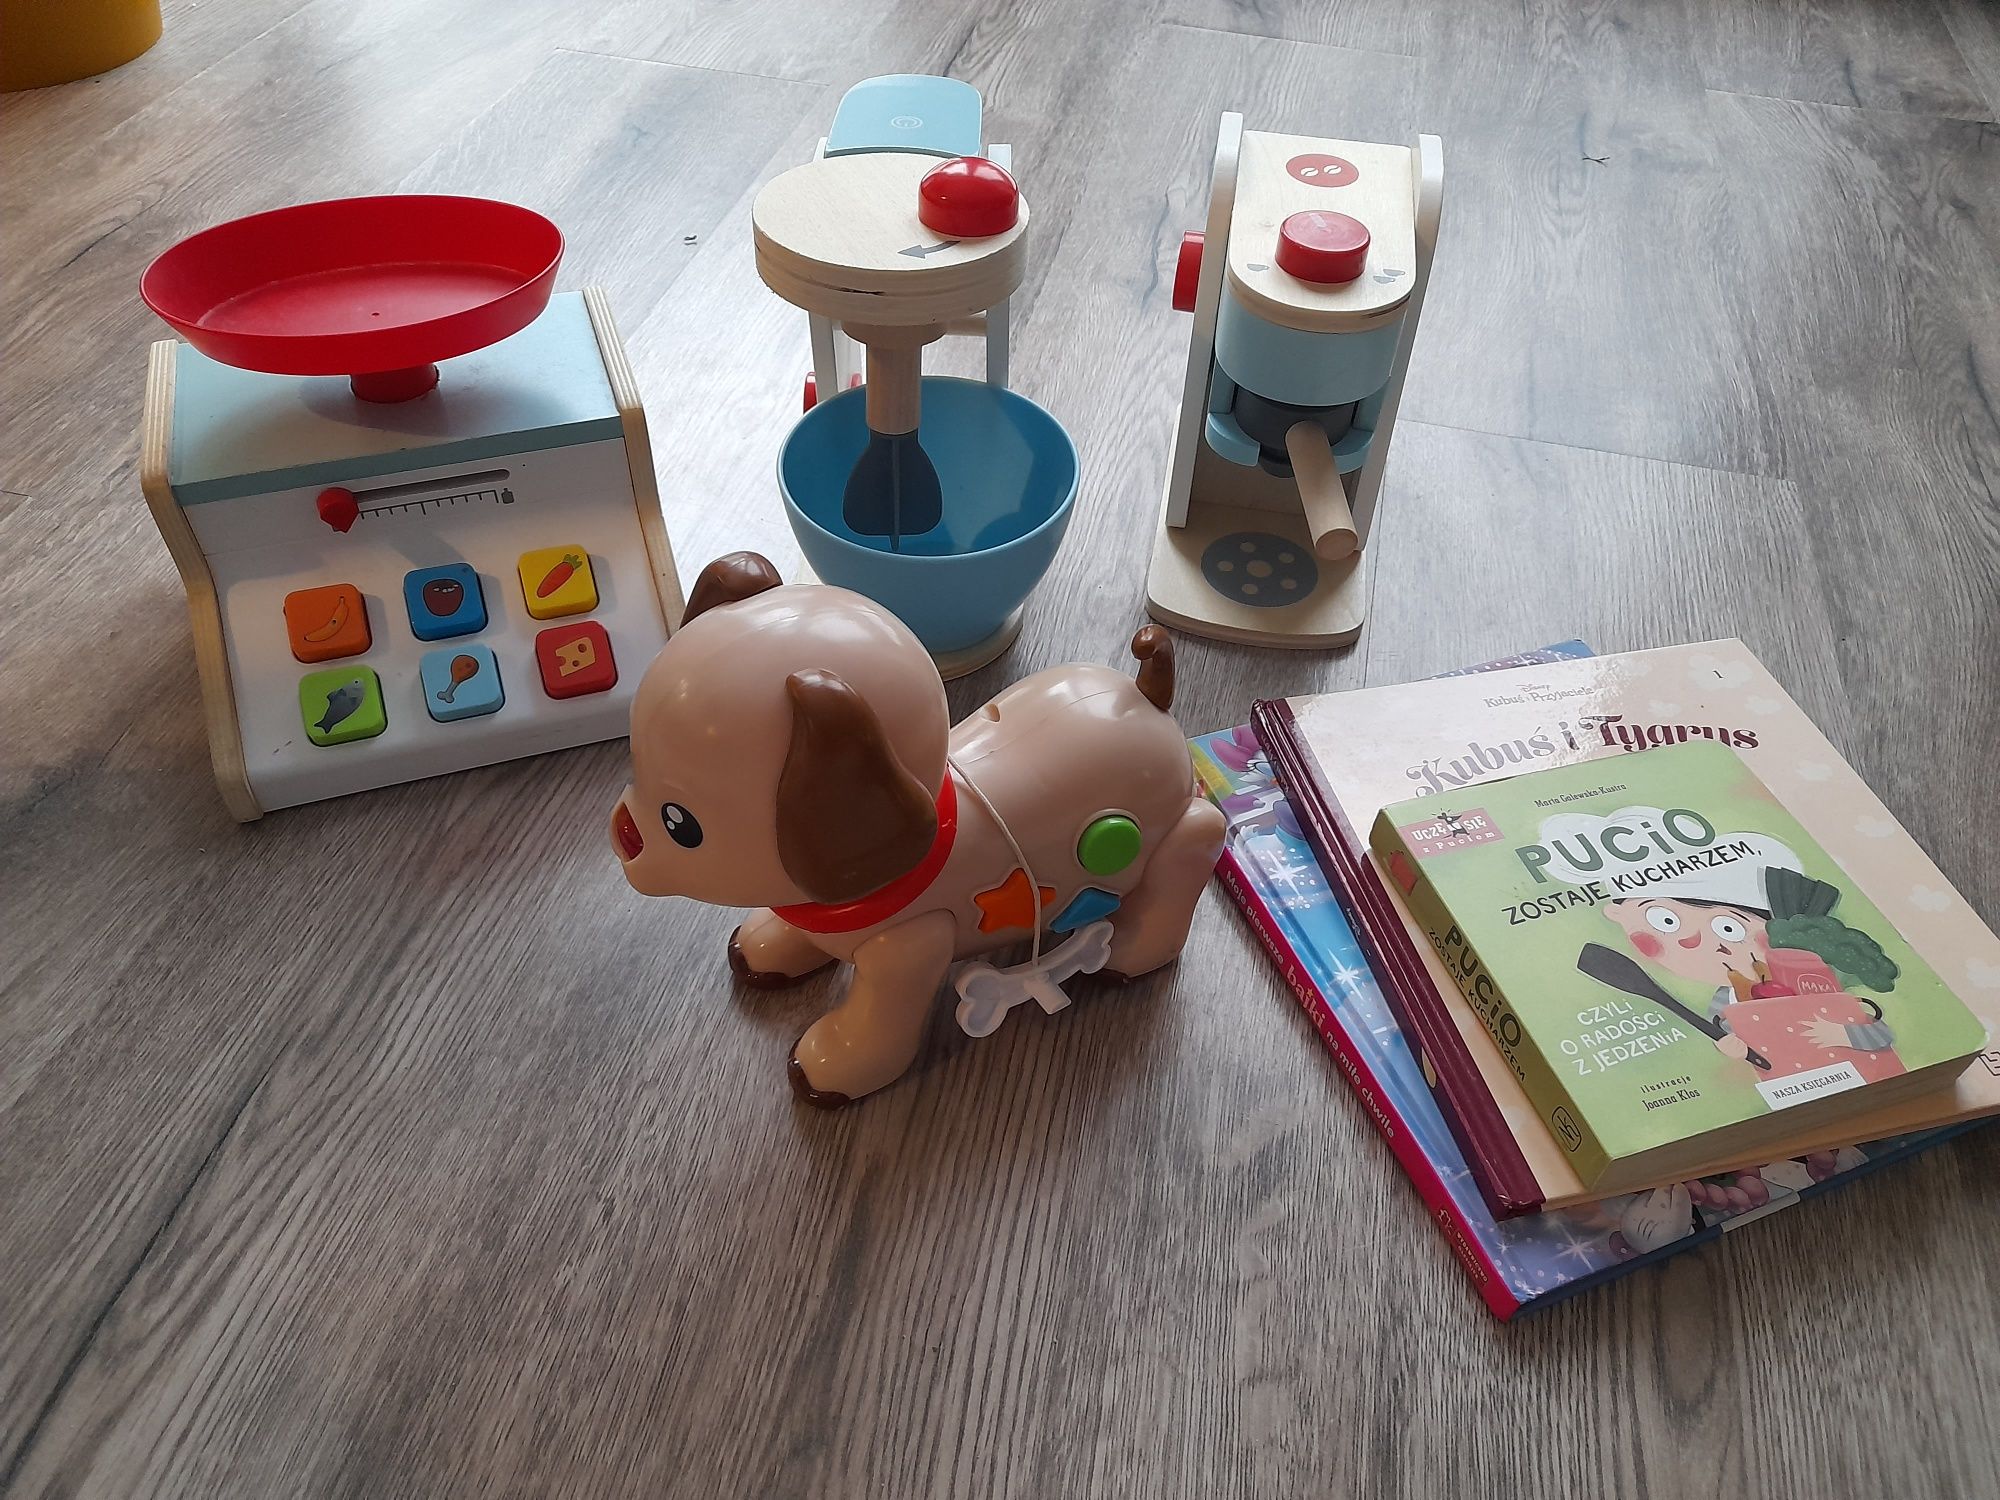 Drewniane zabawki, grający piesek gratis 3 książki Pucio, Kubuś i Miki